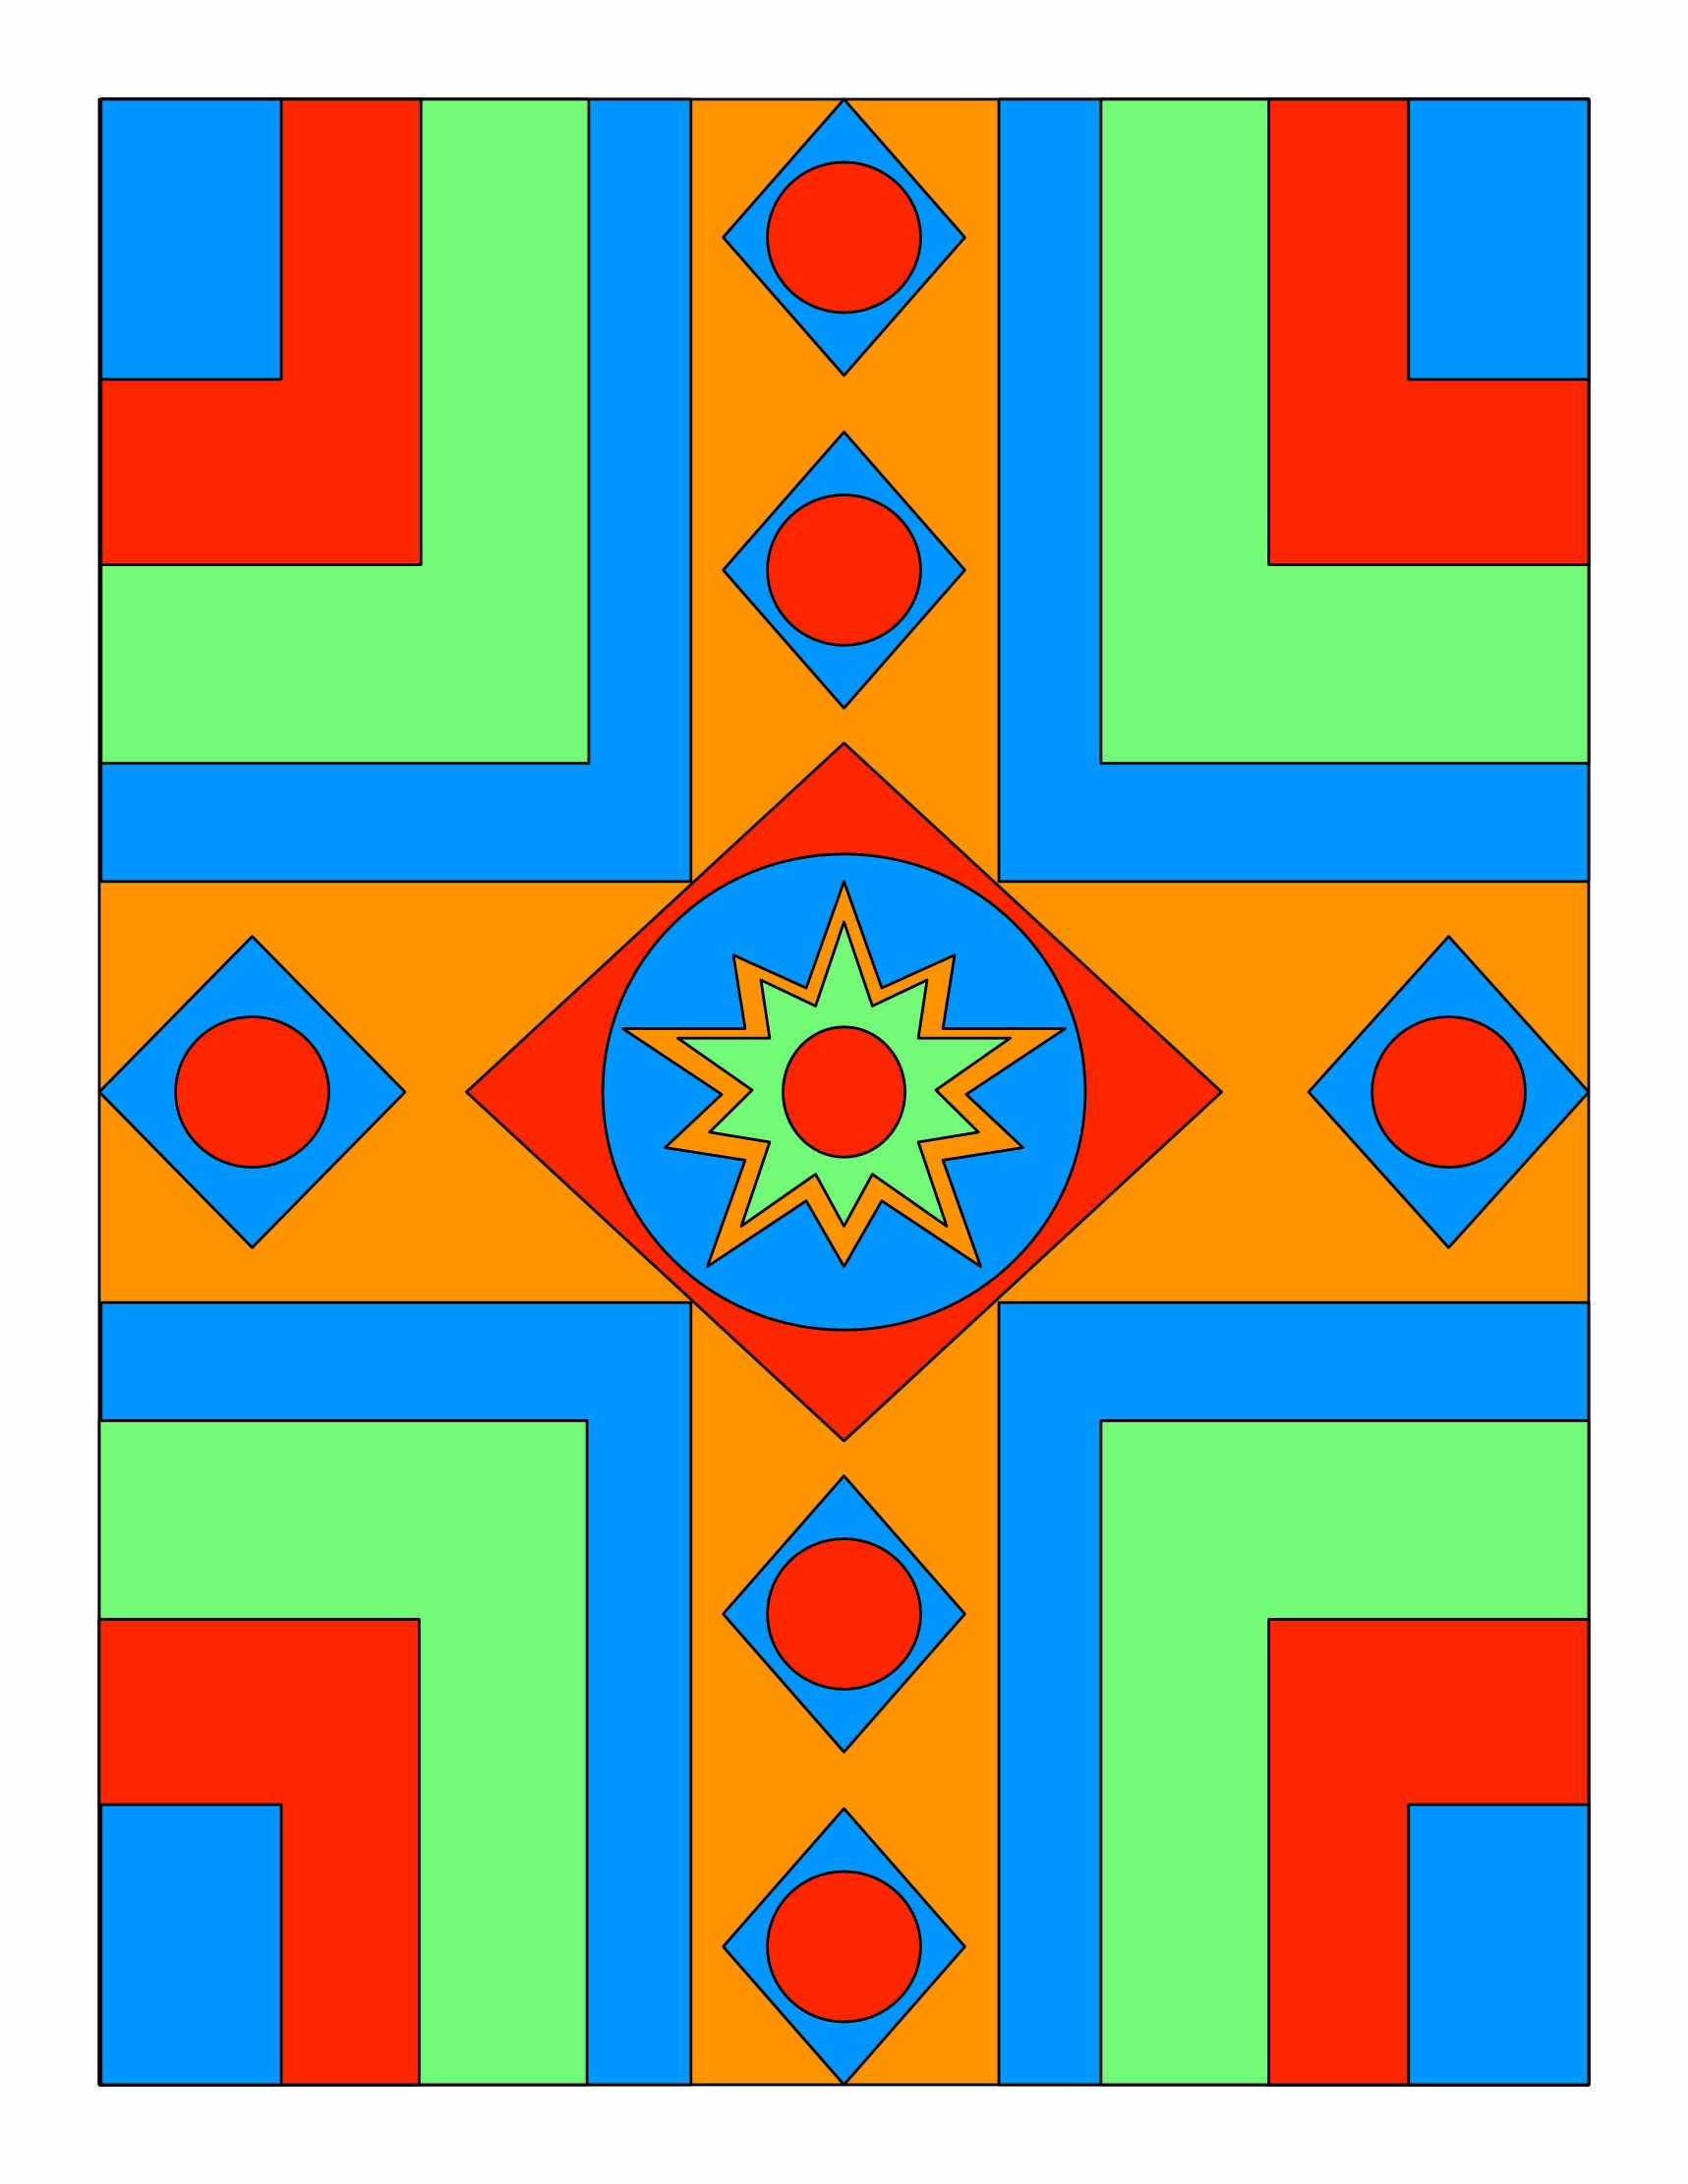 Image of Andrew Schnaare patterns.